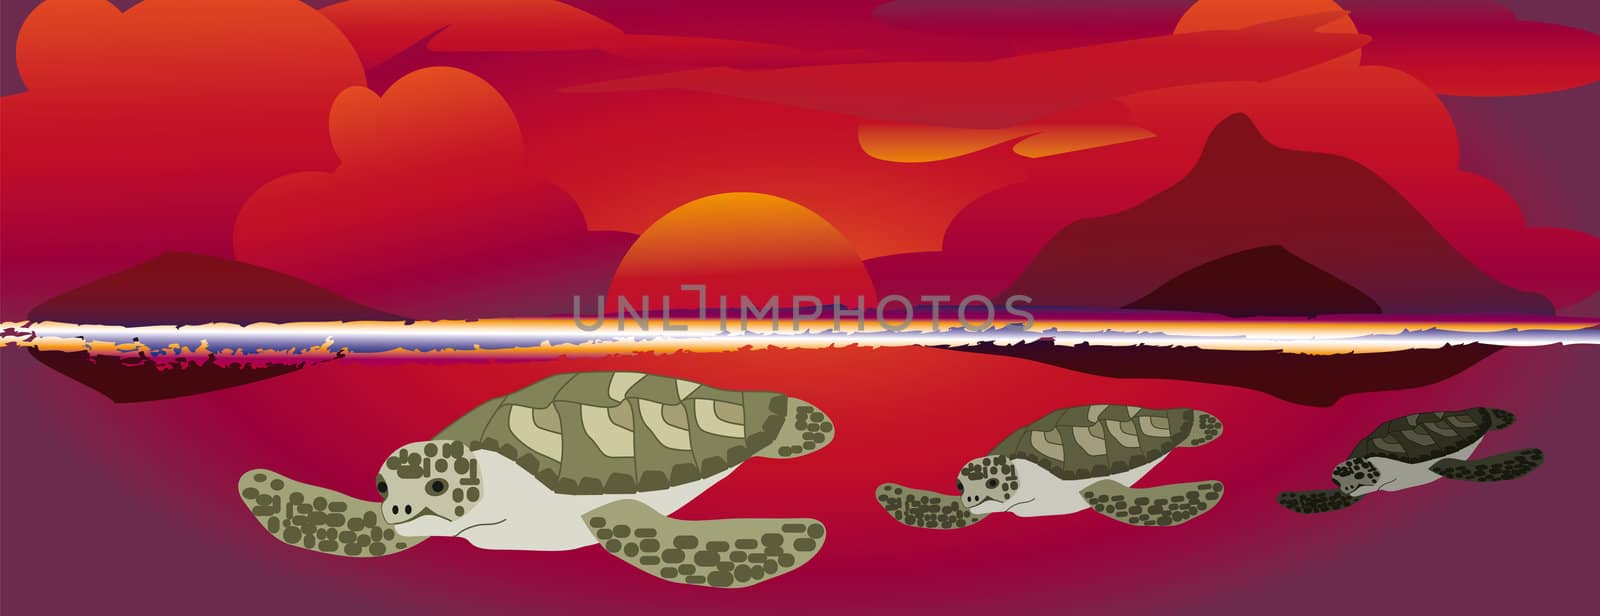 sunset swimming sea turtles by karinclaus